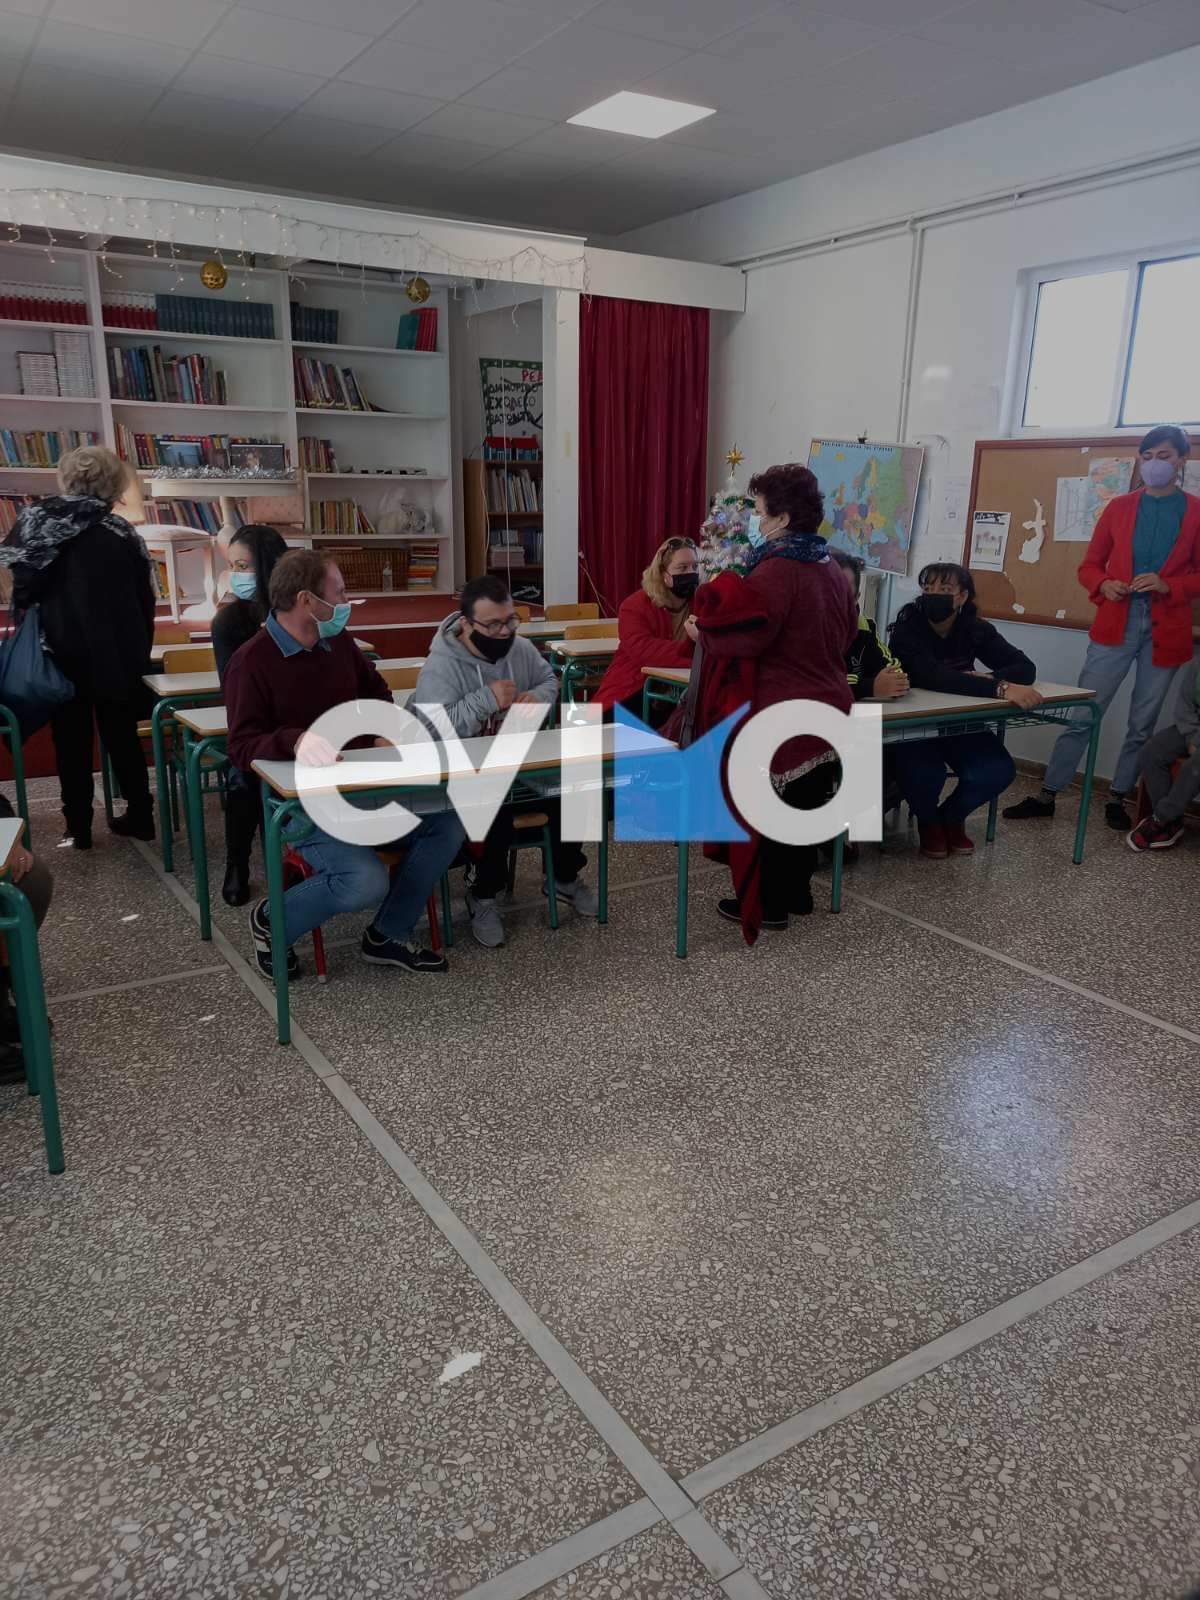 Εύβοια: Στο δημοτικό σχολείο του Βατώντα Μύταλα, Καλαβρής και εθελοντές σε εκδήλωση για την Παγκόσμια Ημέρα Αναπηρίας (pic)